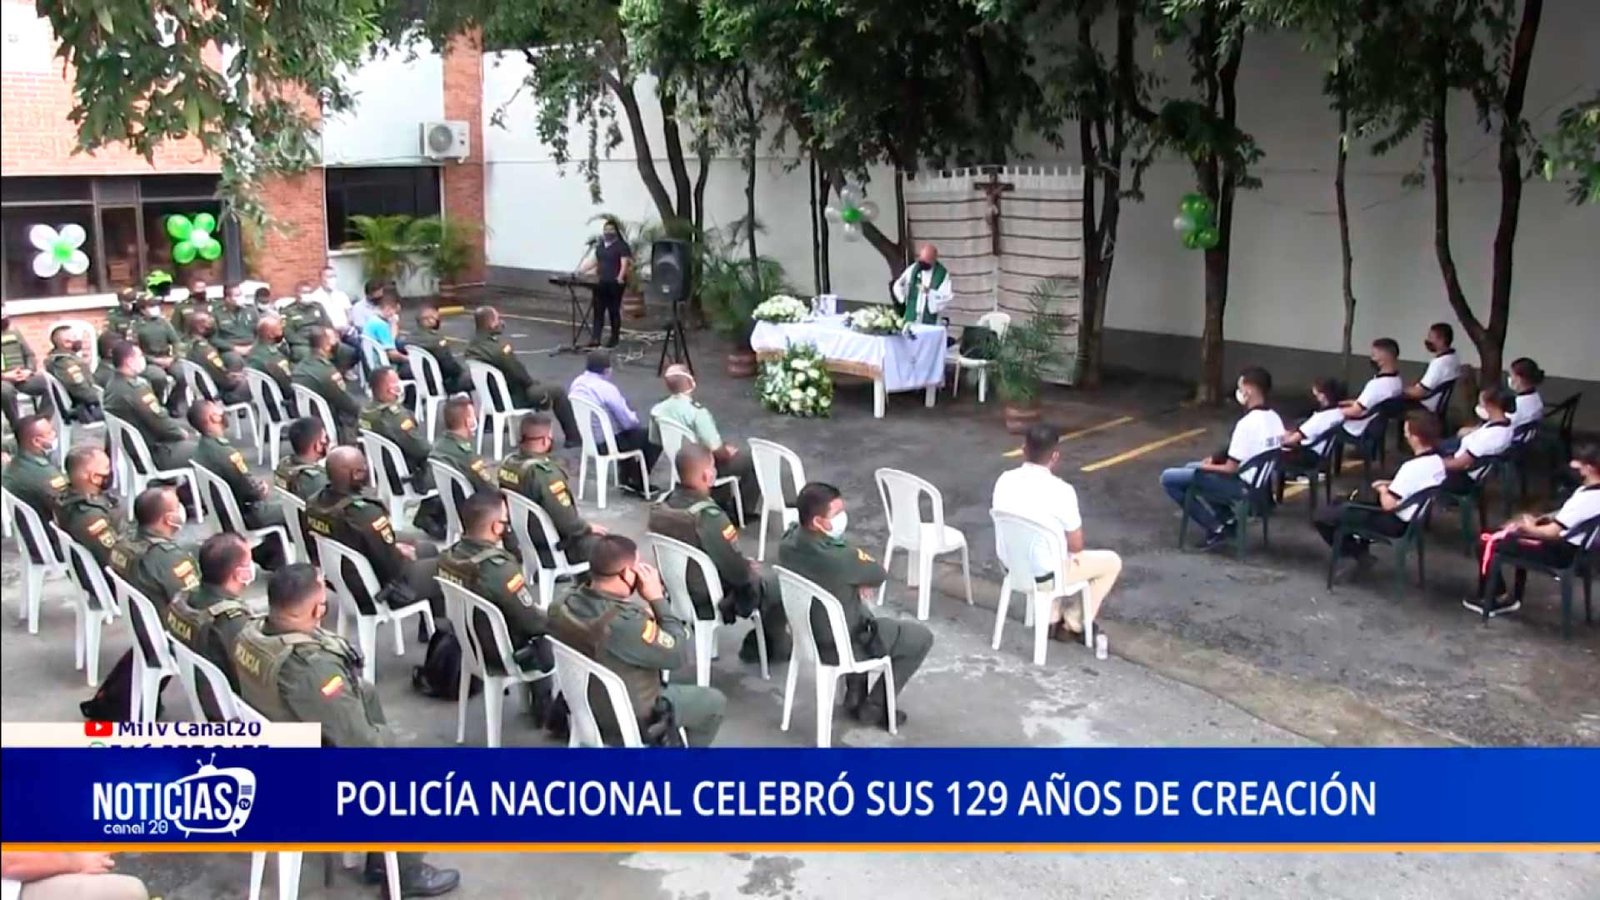 POLICÍA NACIONAL CELEBRÓ SUS 129 AÑOS DE CREACIÓN